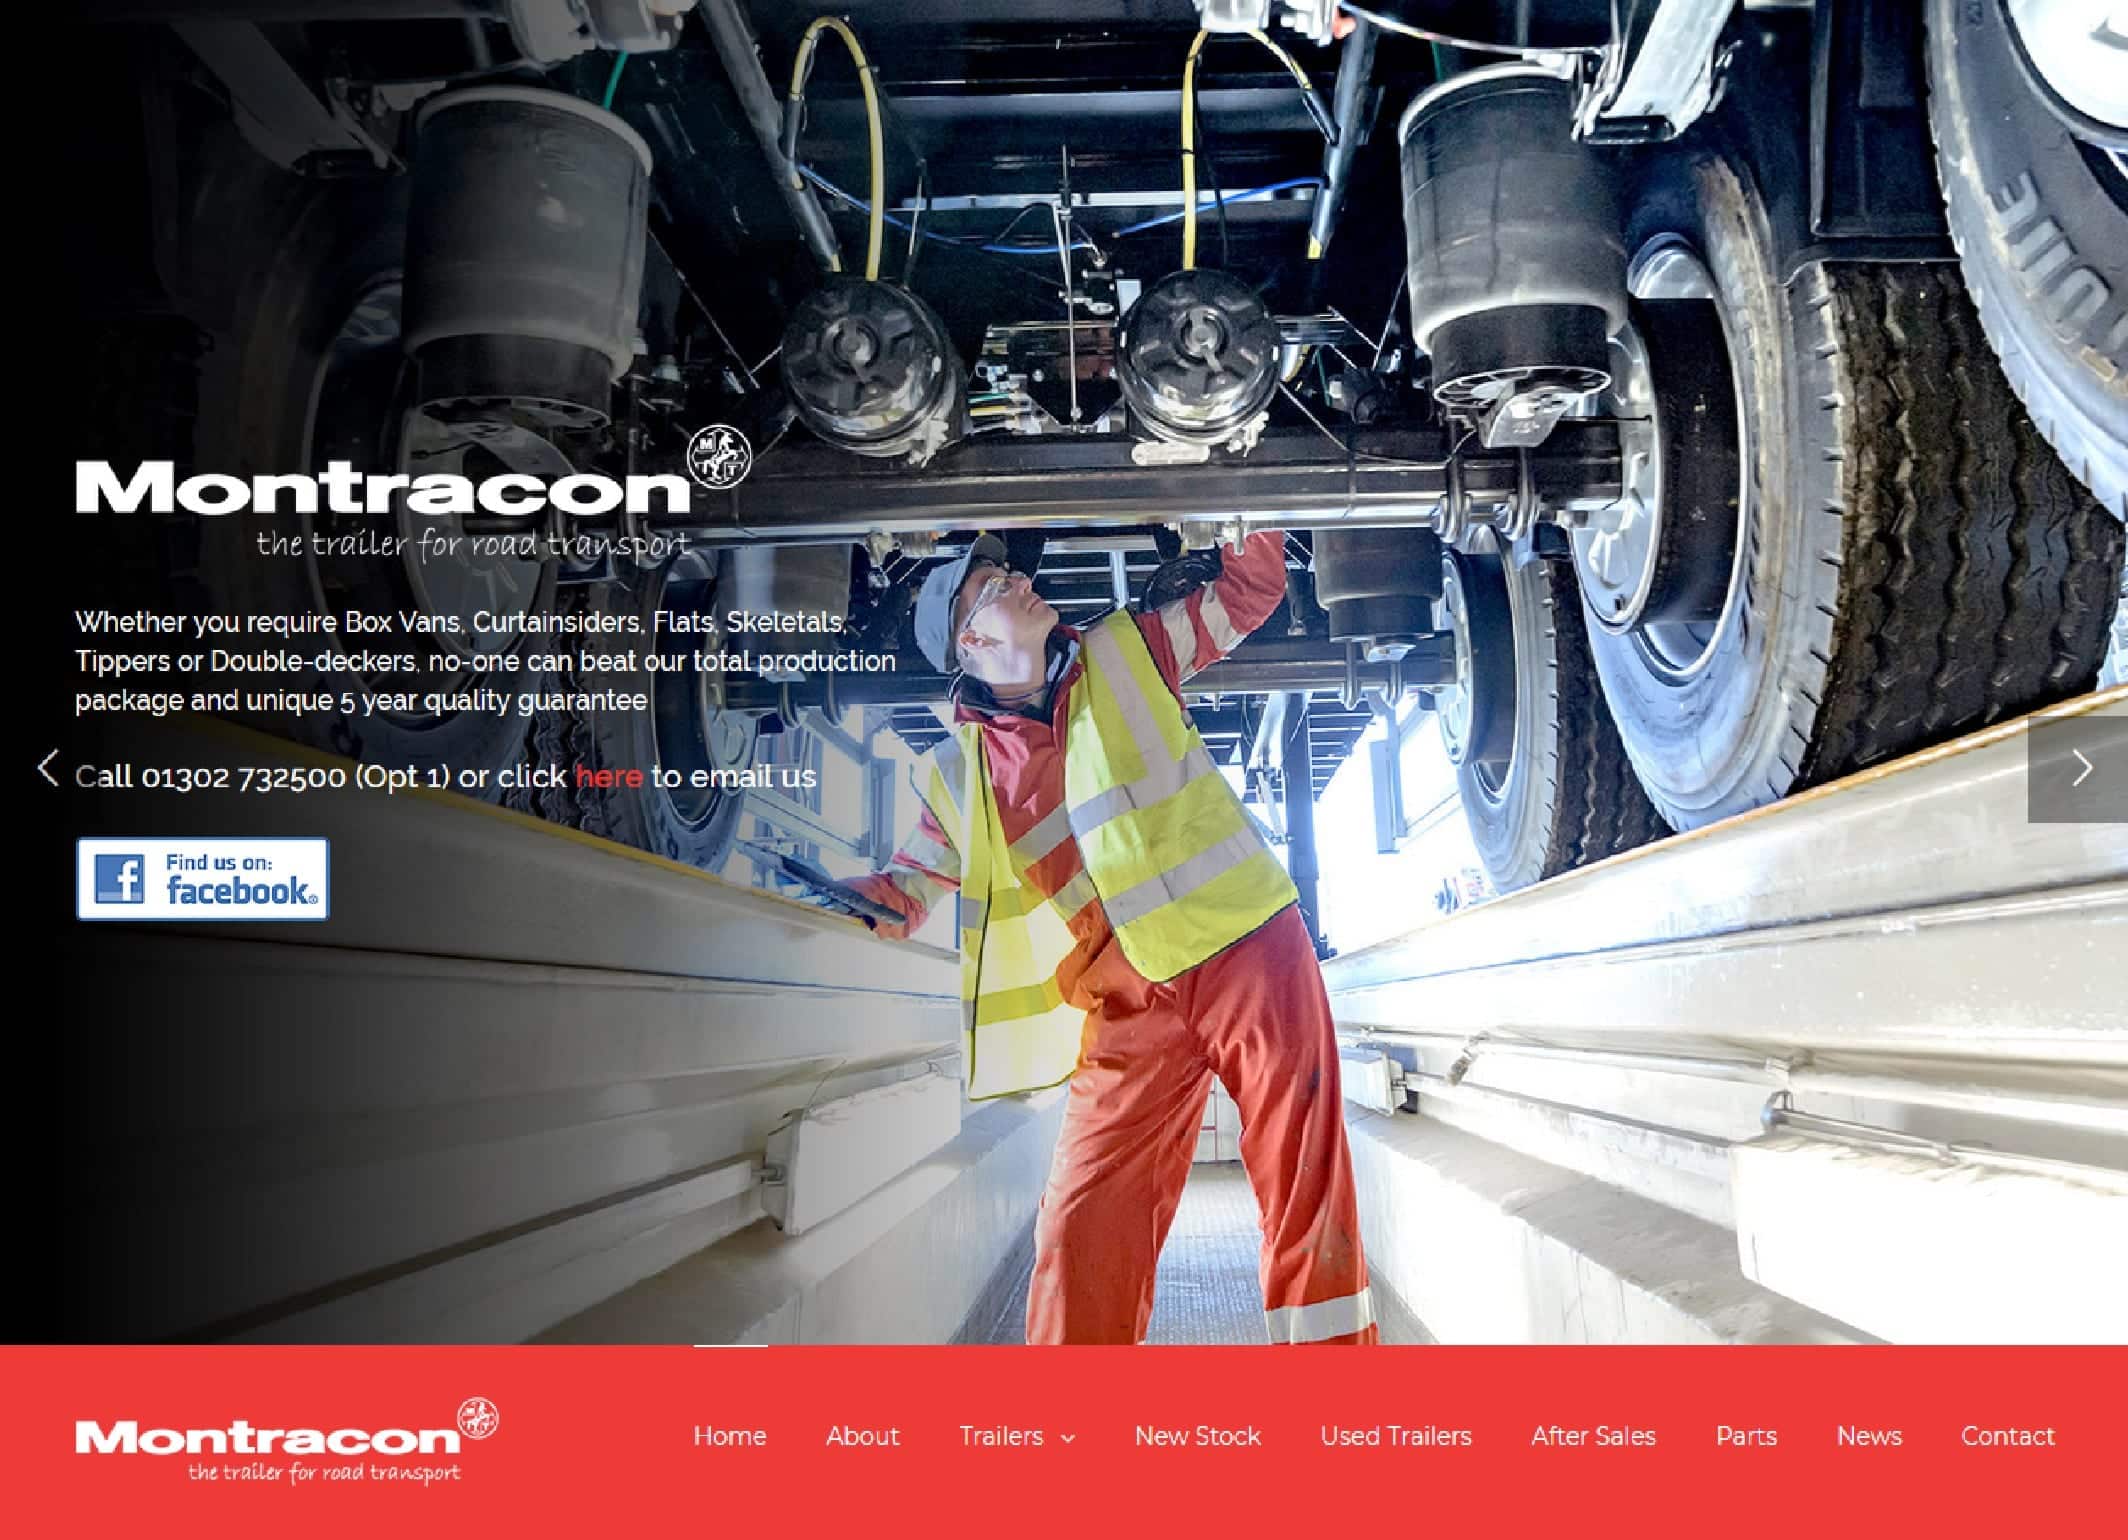 Montracon's new website